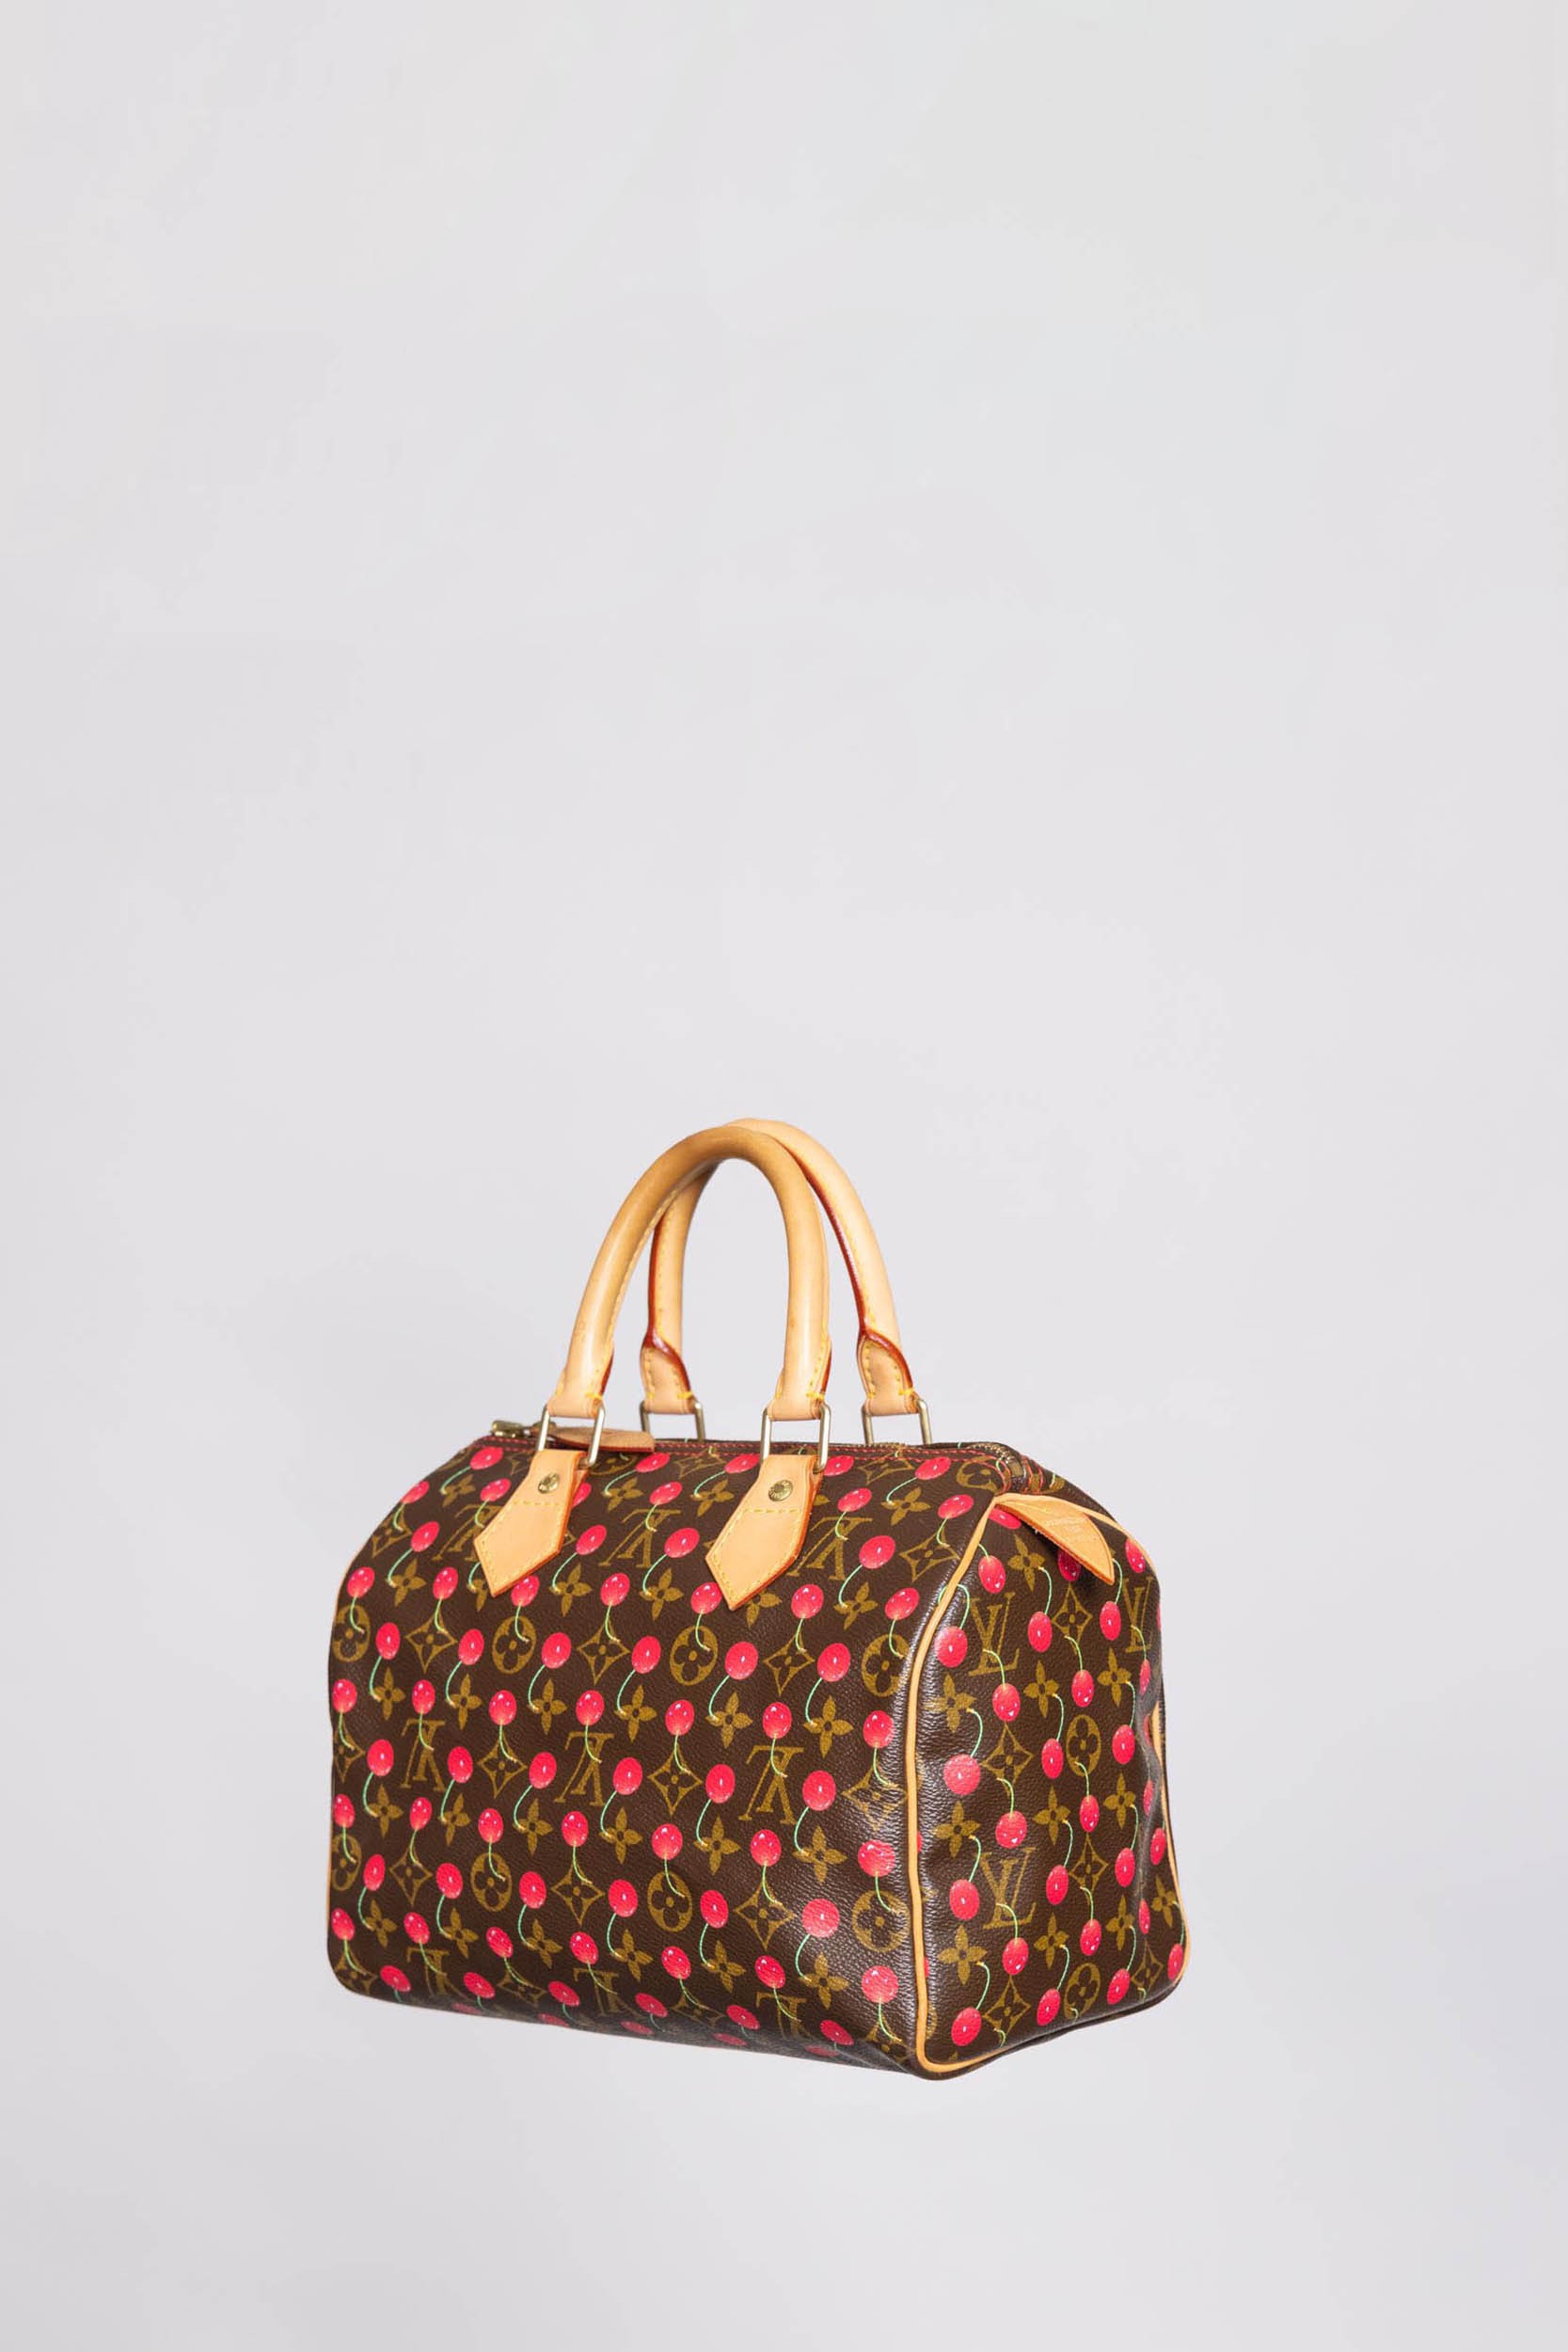 Louis Vuitton Monogram Cherry Speedy 25 Handbag M95009 Takashi Murakam